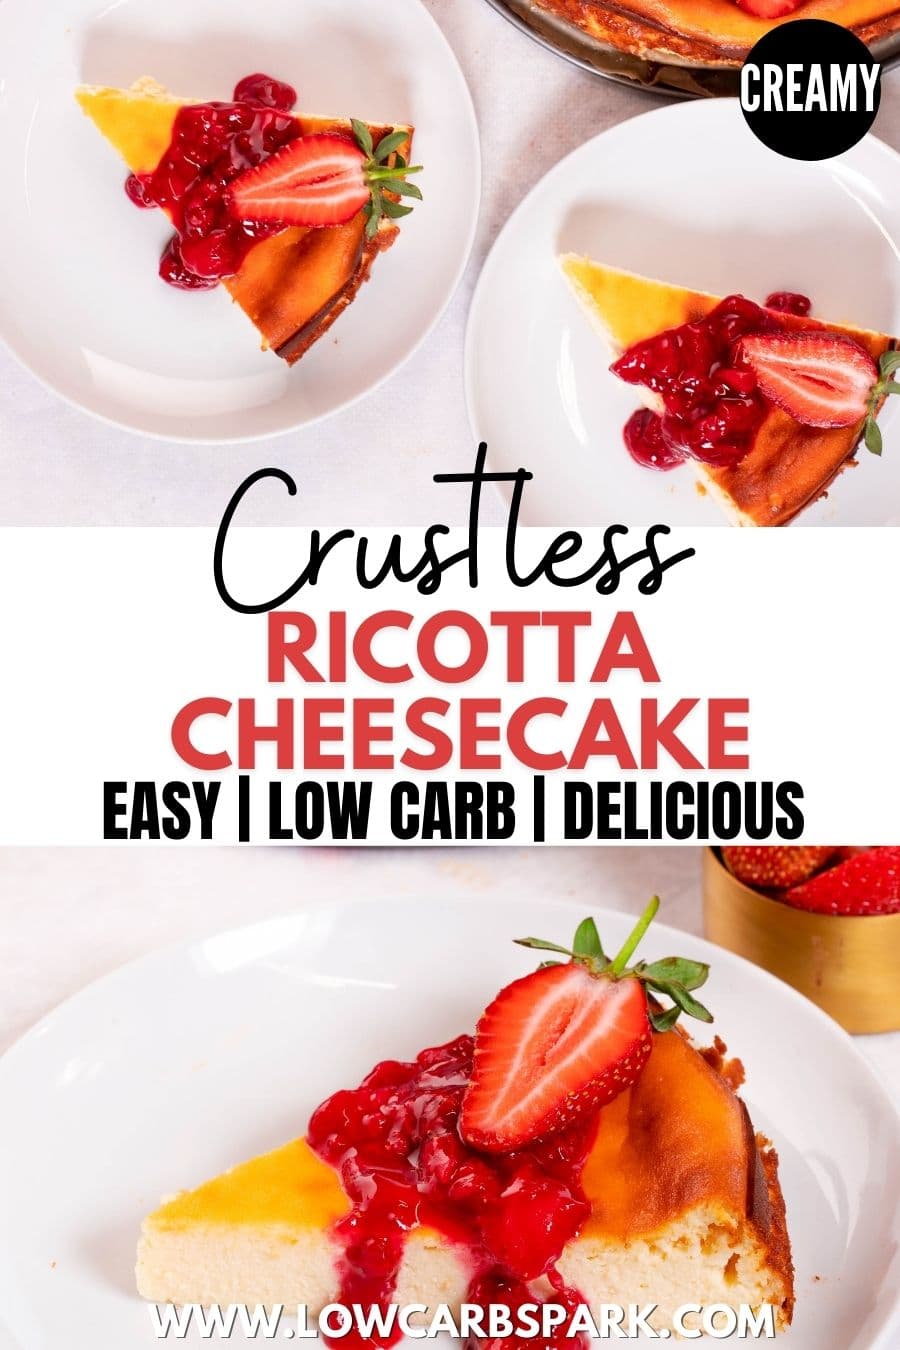 Crustless Ricotta Cheesecake